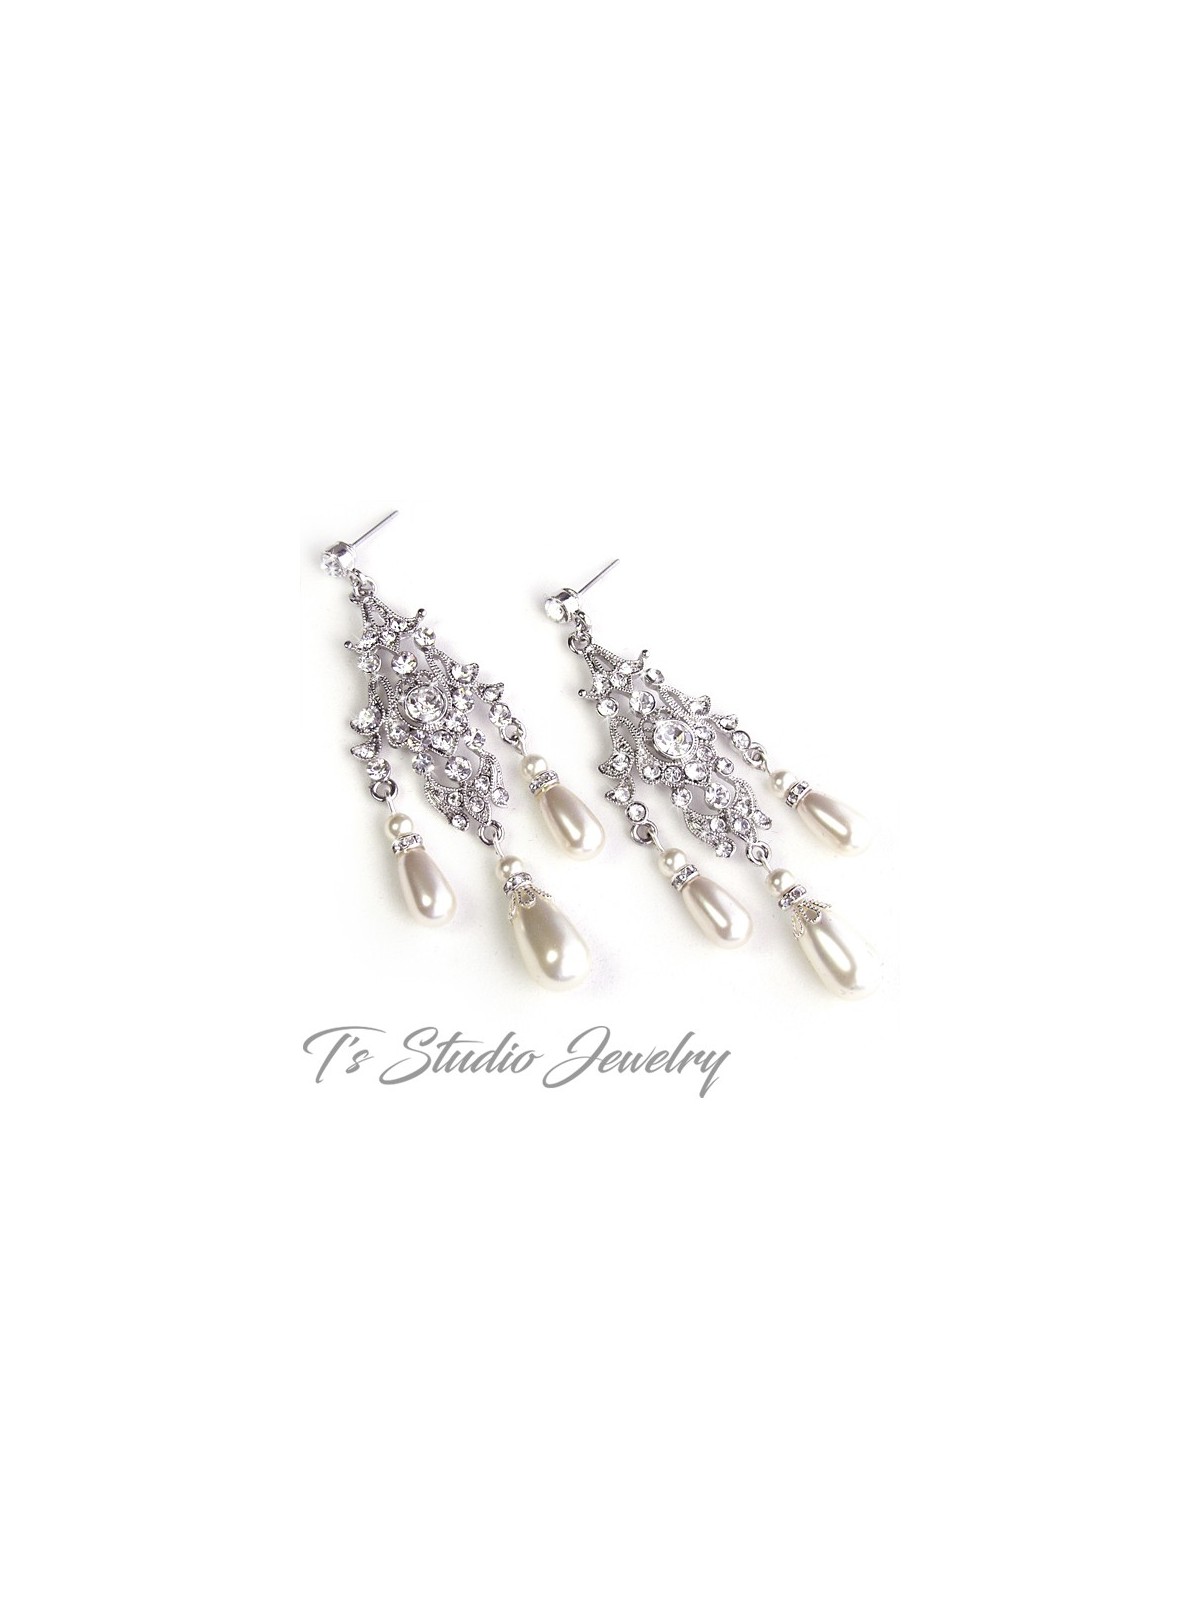 Vintage Style Rhinestone Crystal and Pearl Chandelier Bridal Earrings